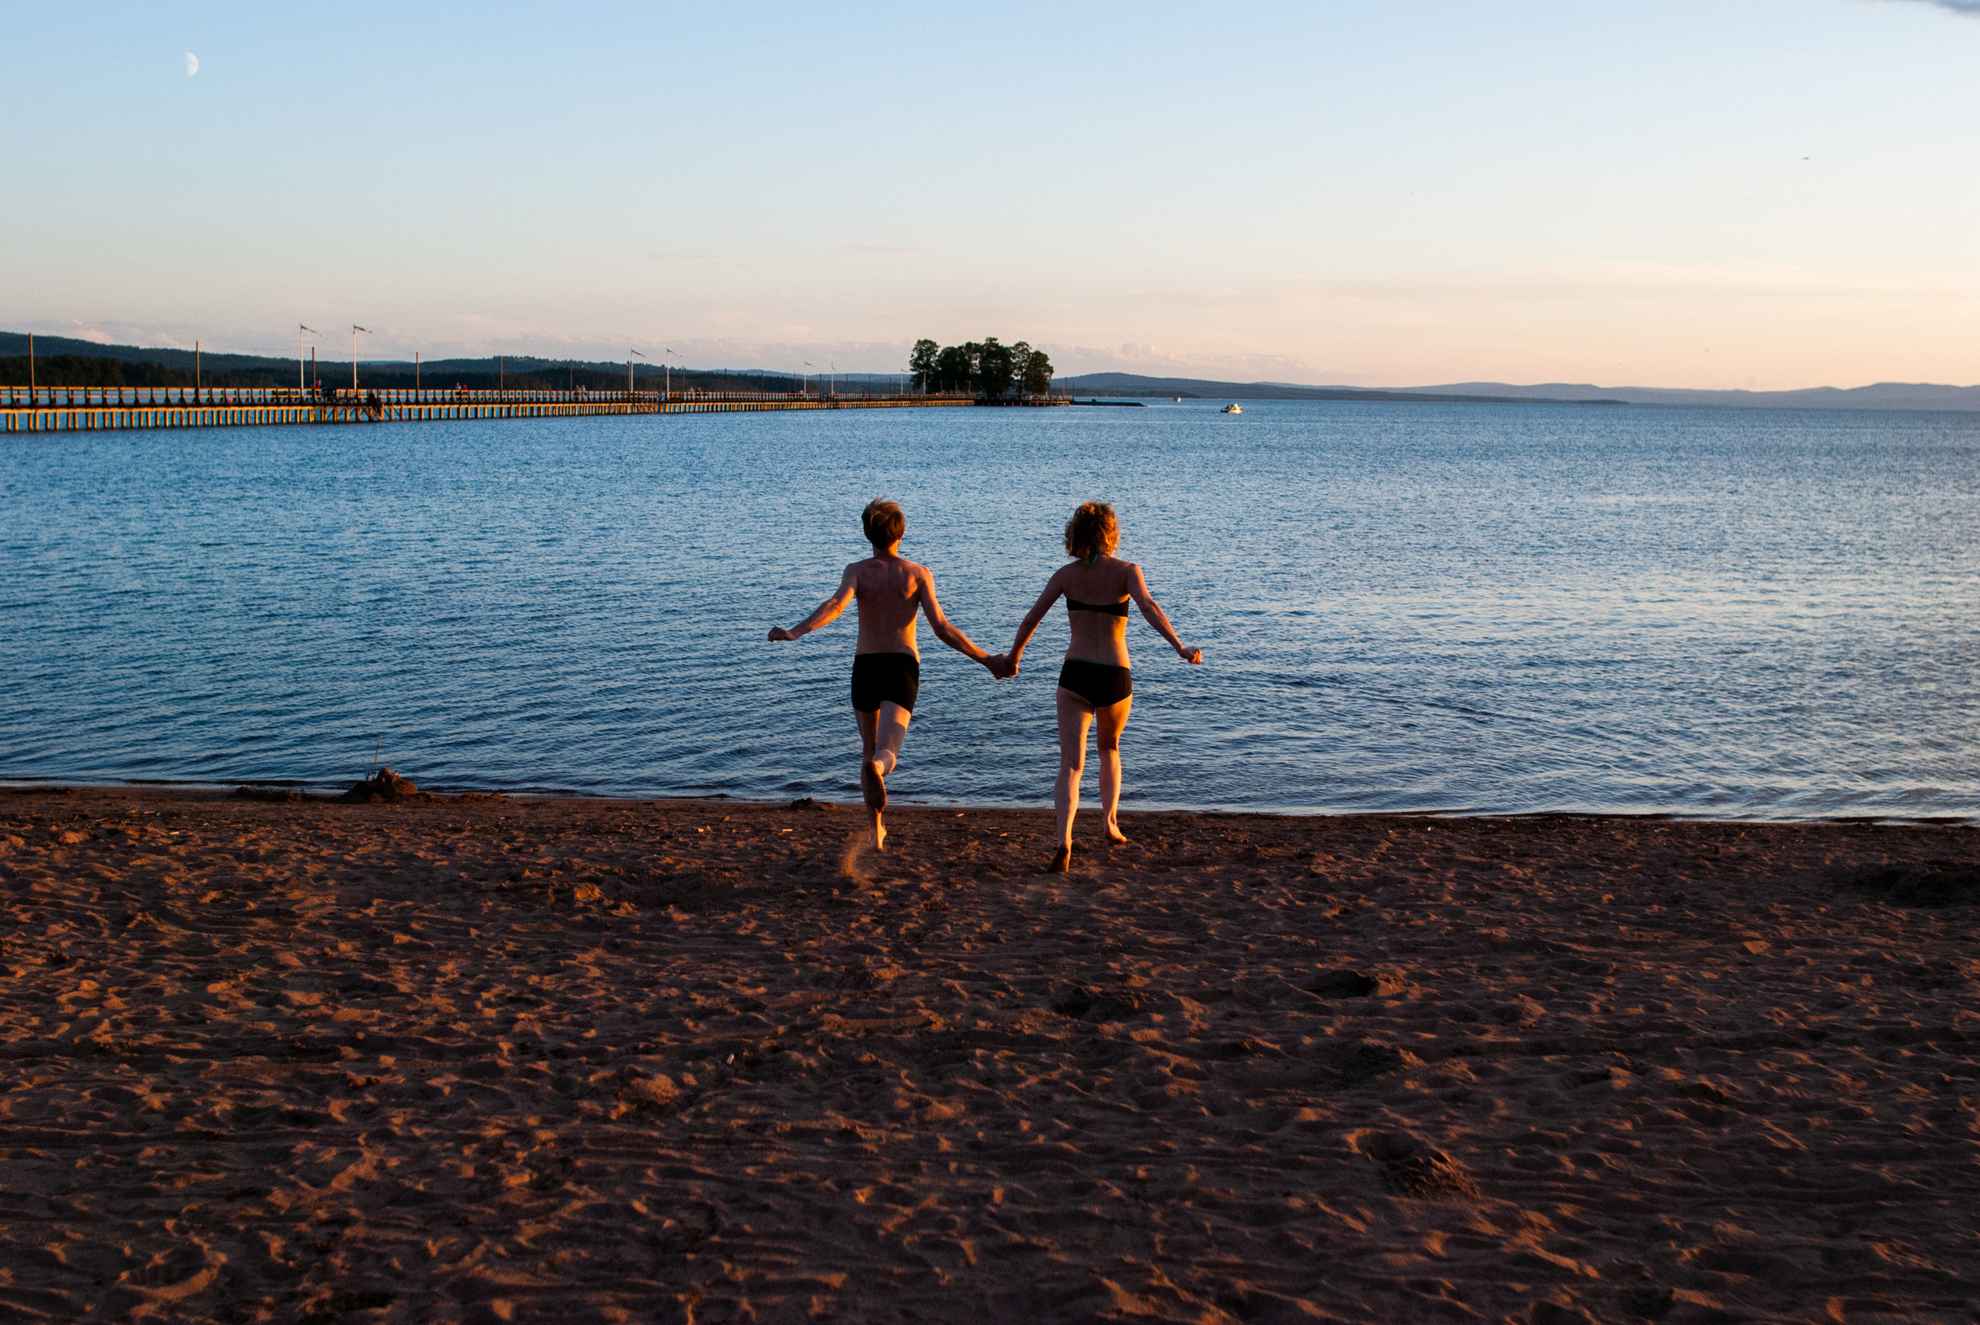 Twee mensen in badpakken rennen over een strand richting het water.